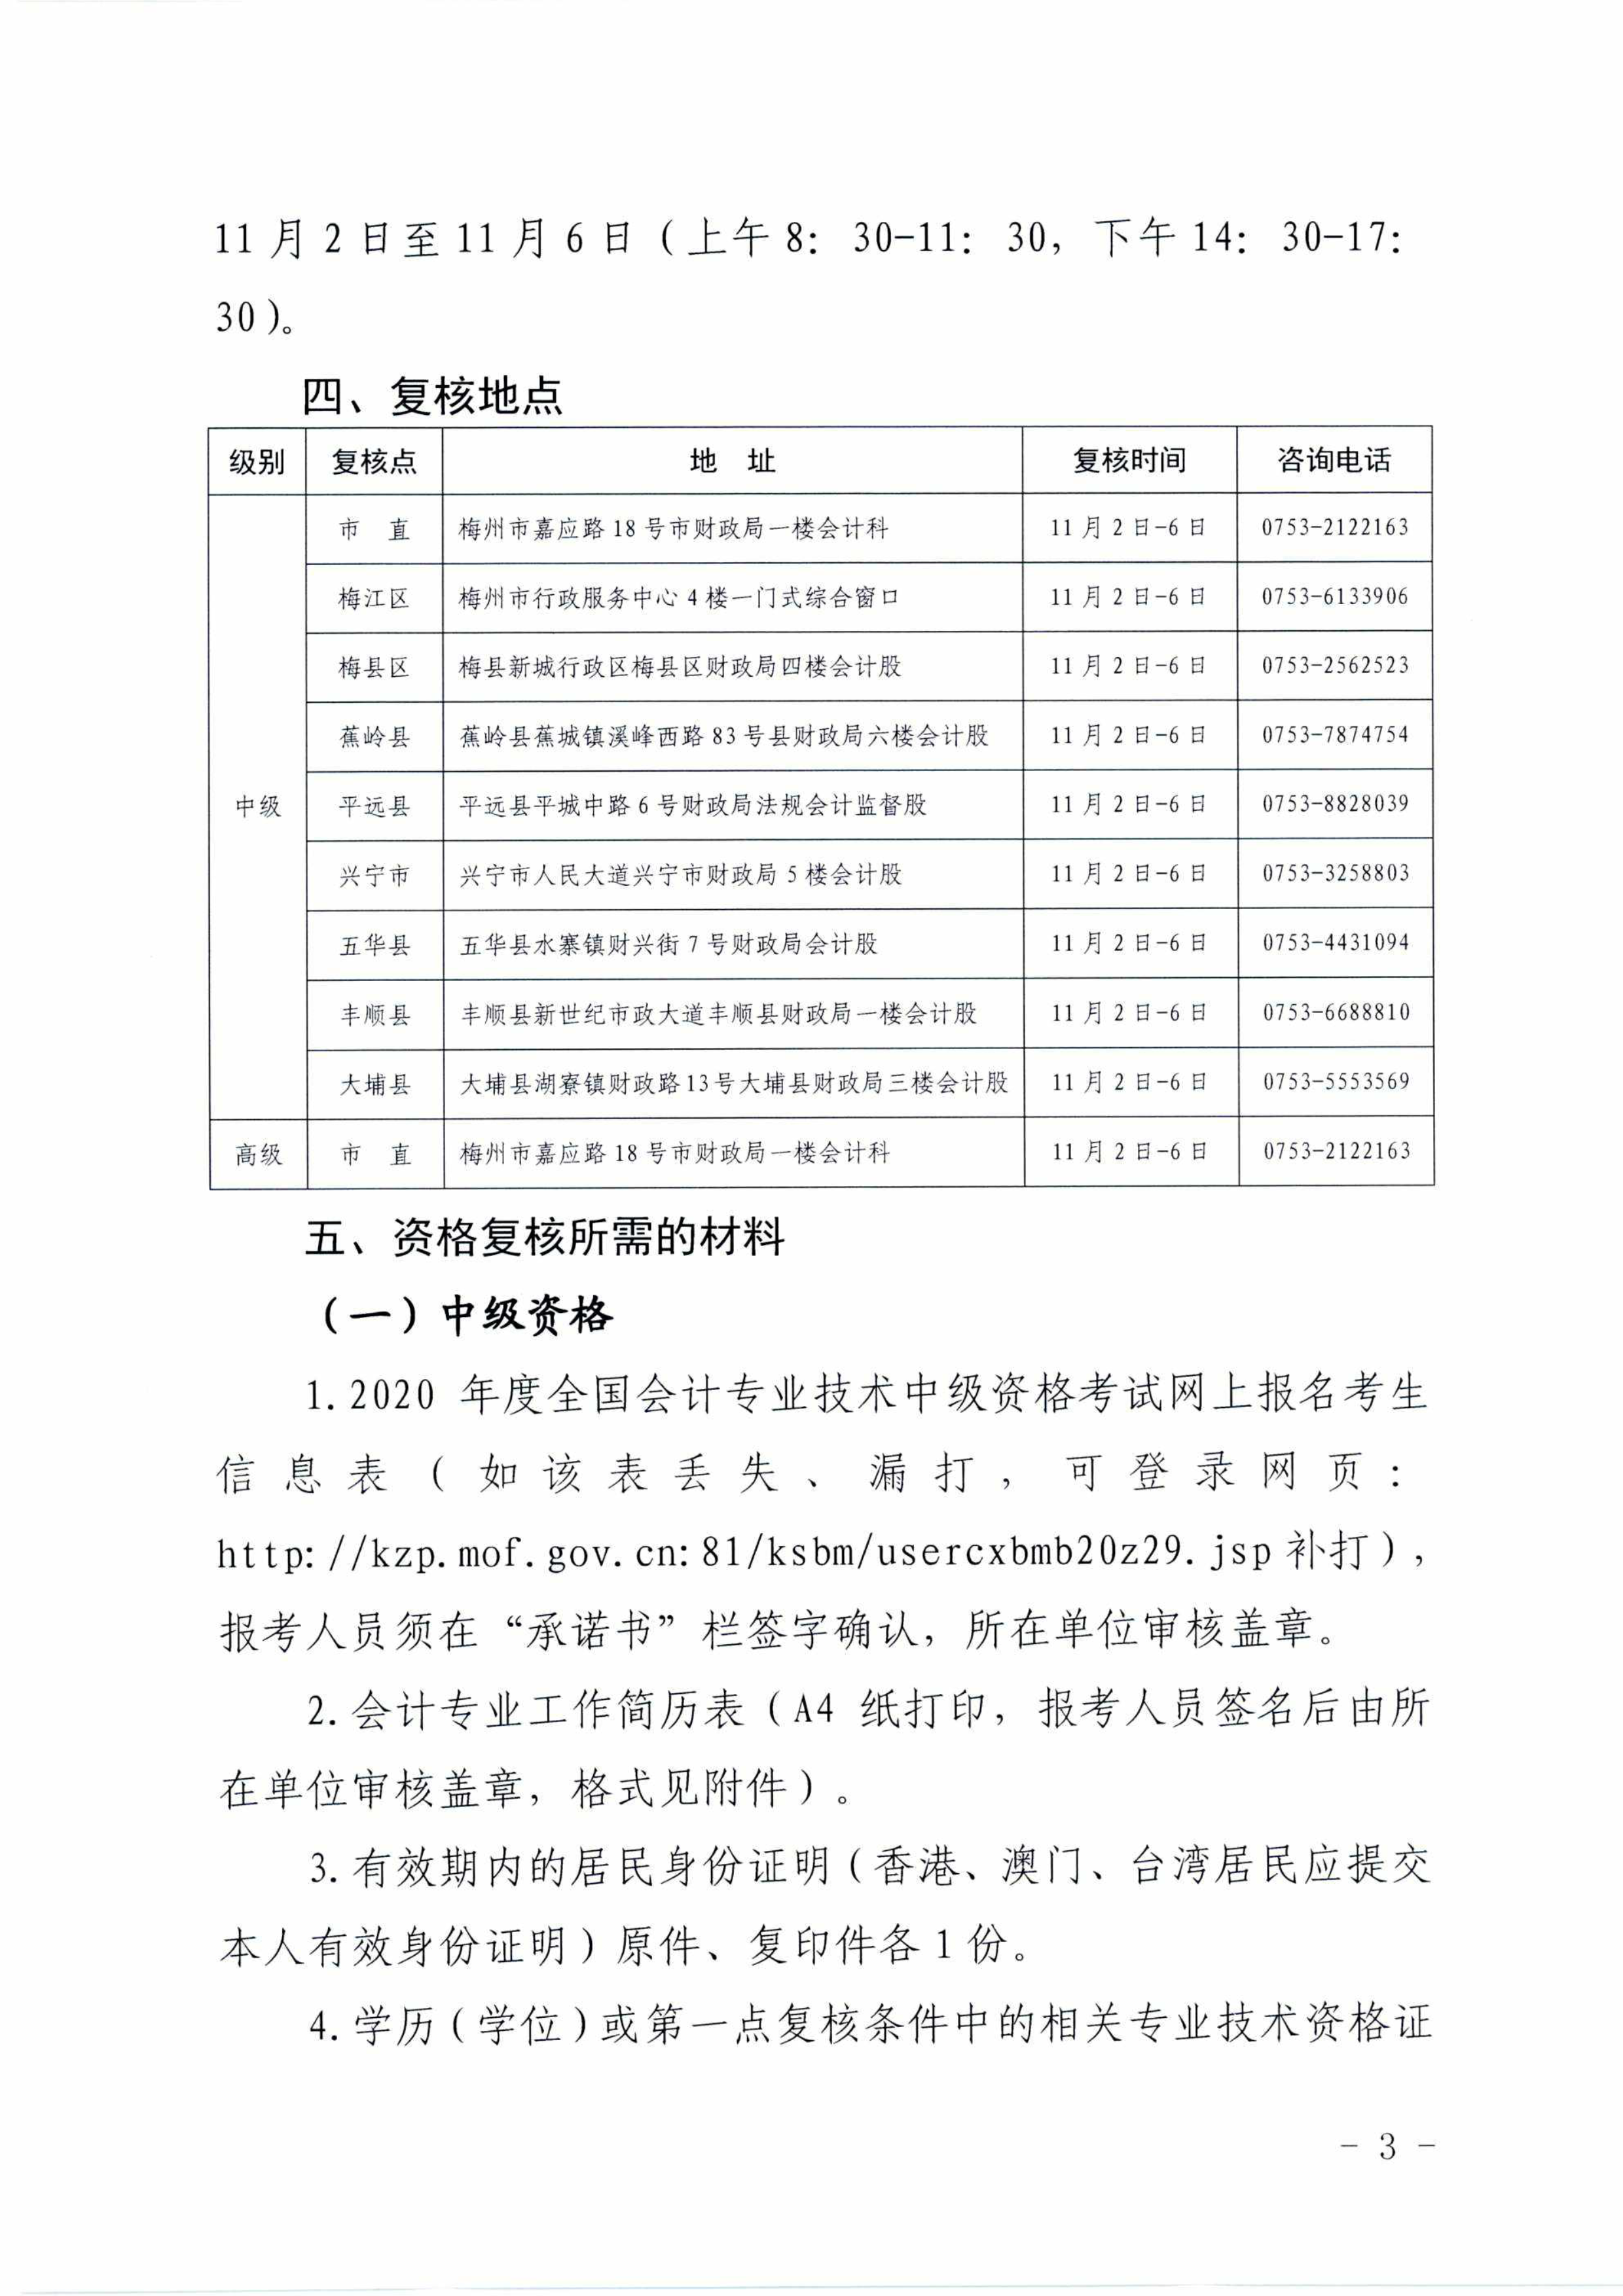 广东梅州2020中级会计职称考试考后资格审核通知